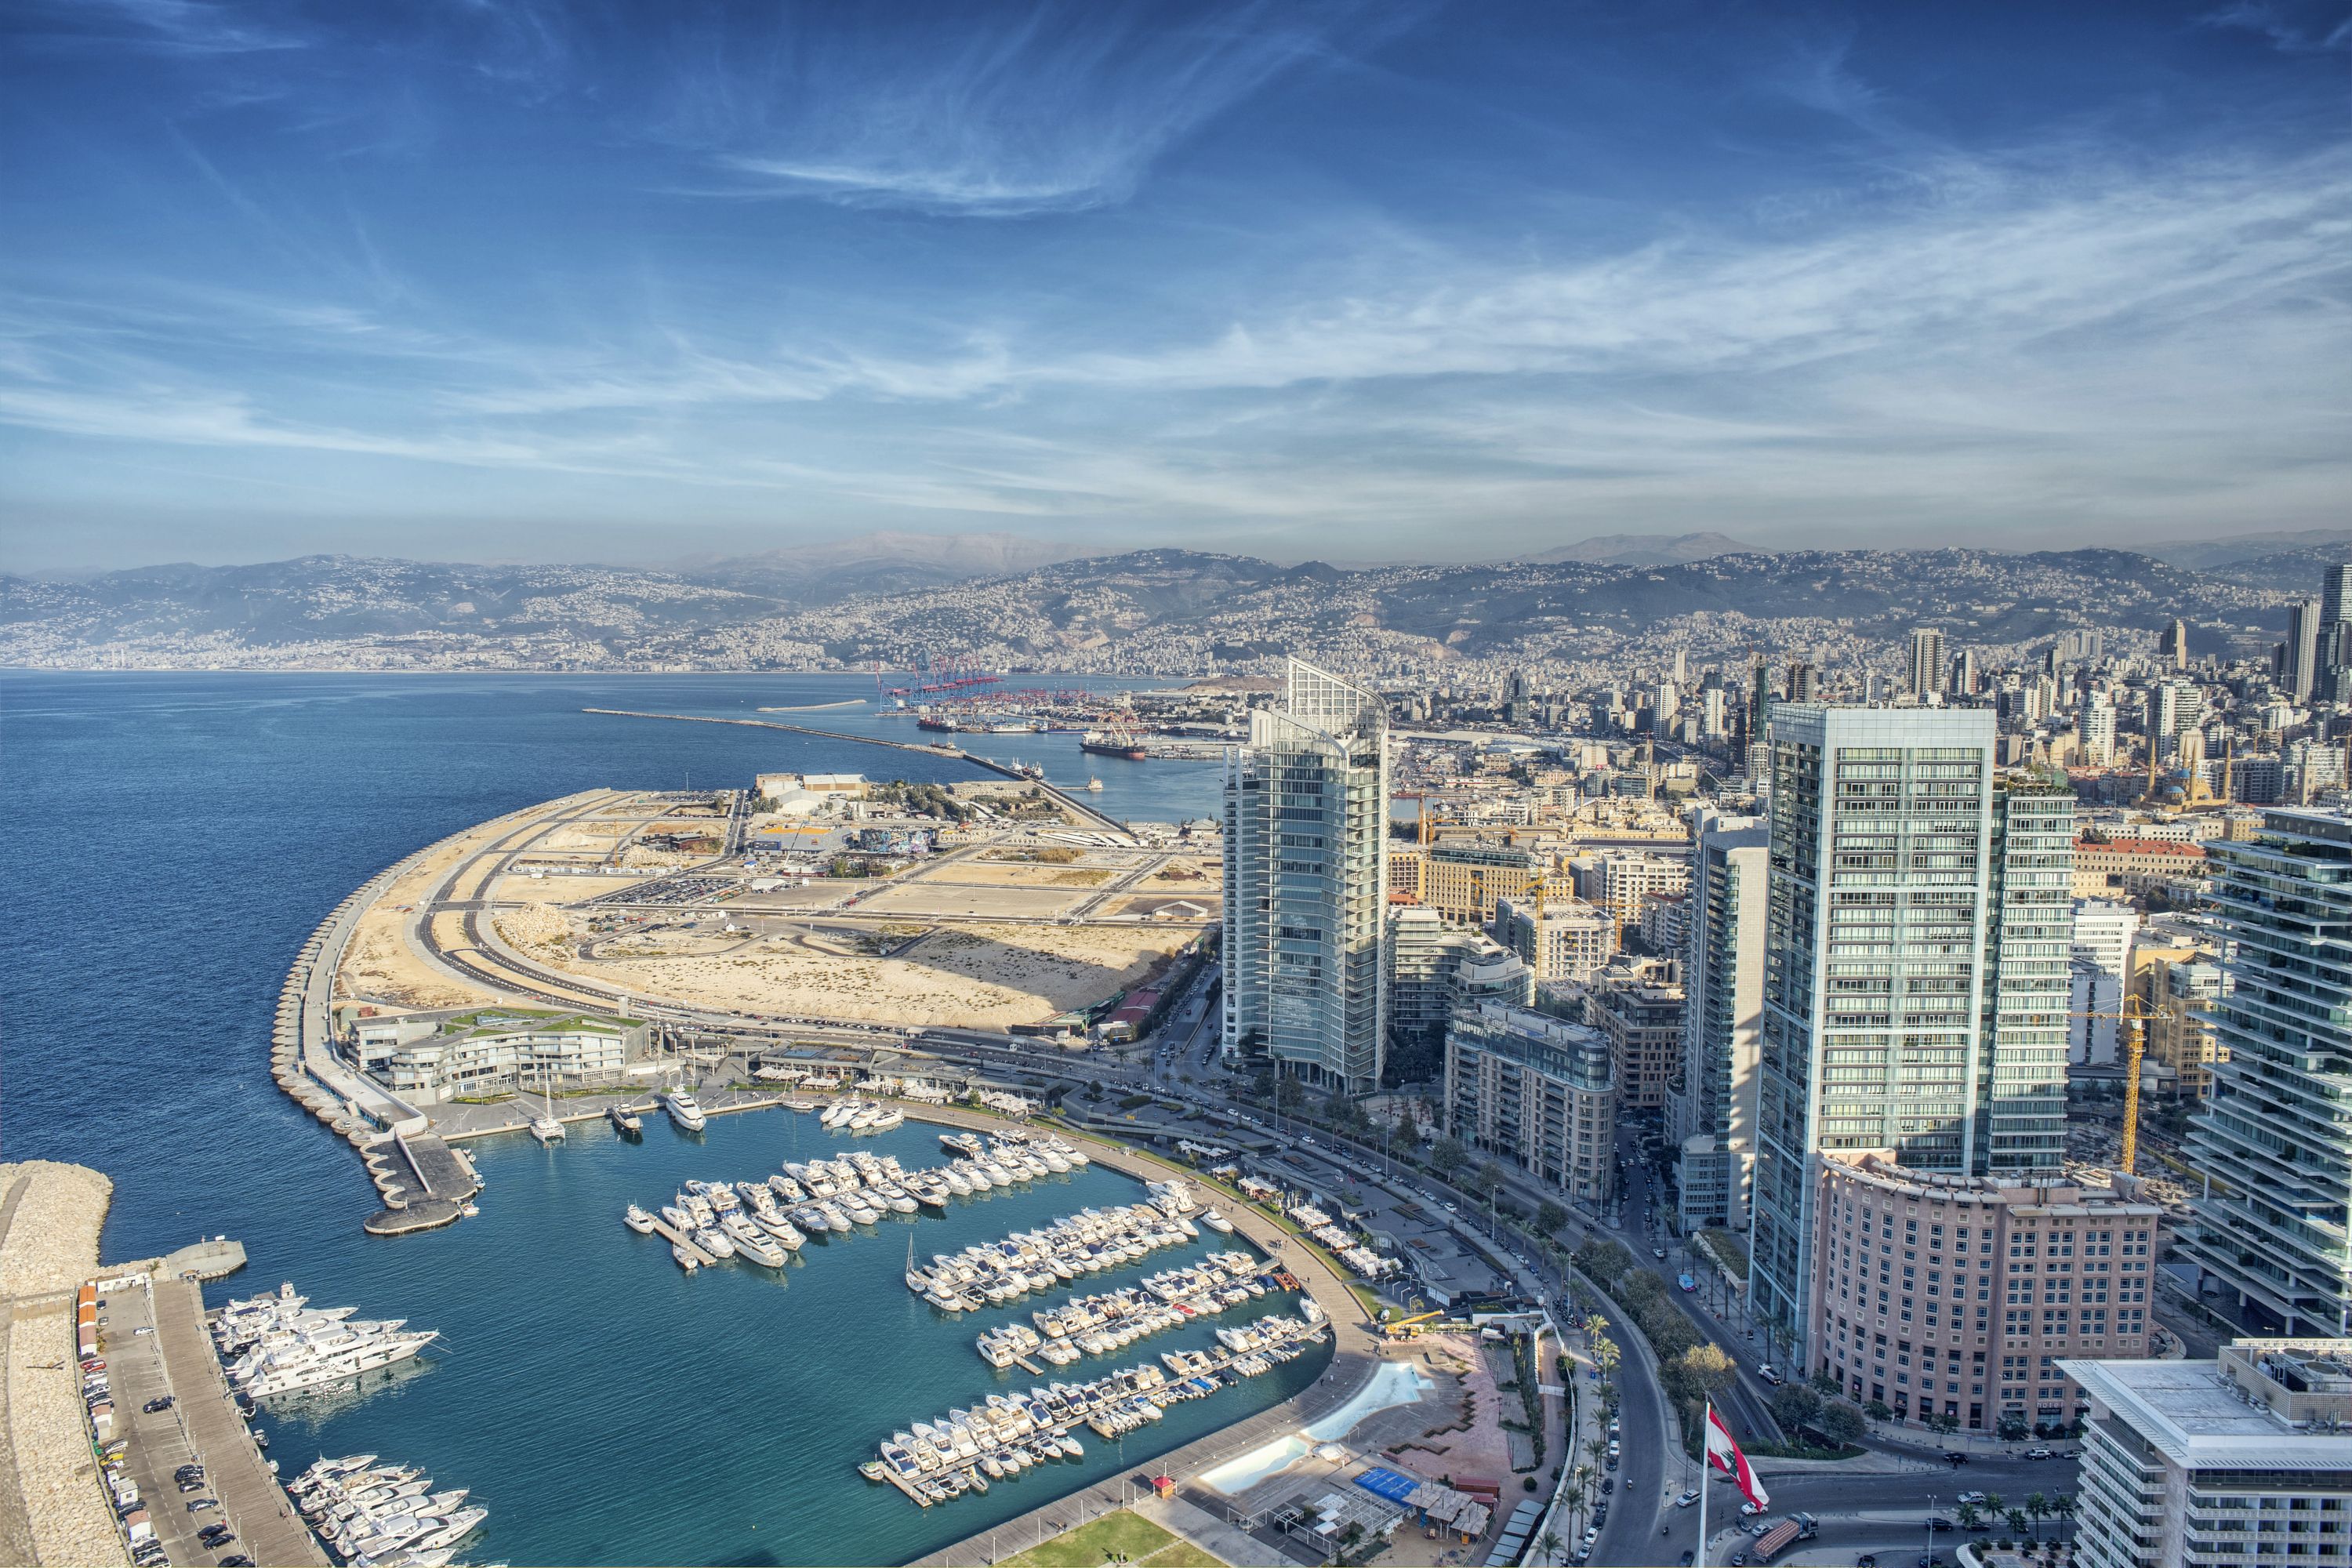 أصبحت بيروت القلب النابض للحياة العصرية ولتاريخ البلد بأكمله بفضل تاريخها العريق على مر العصور.